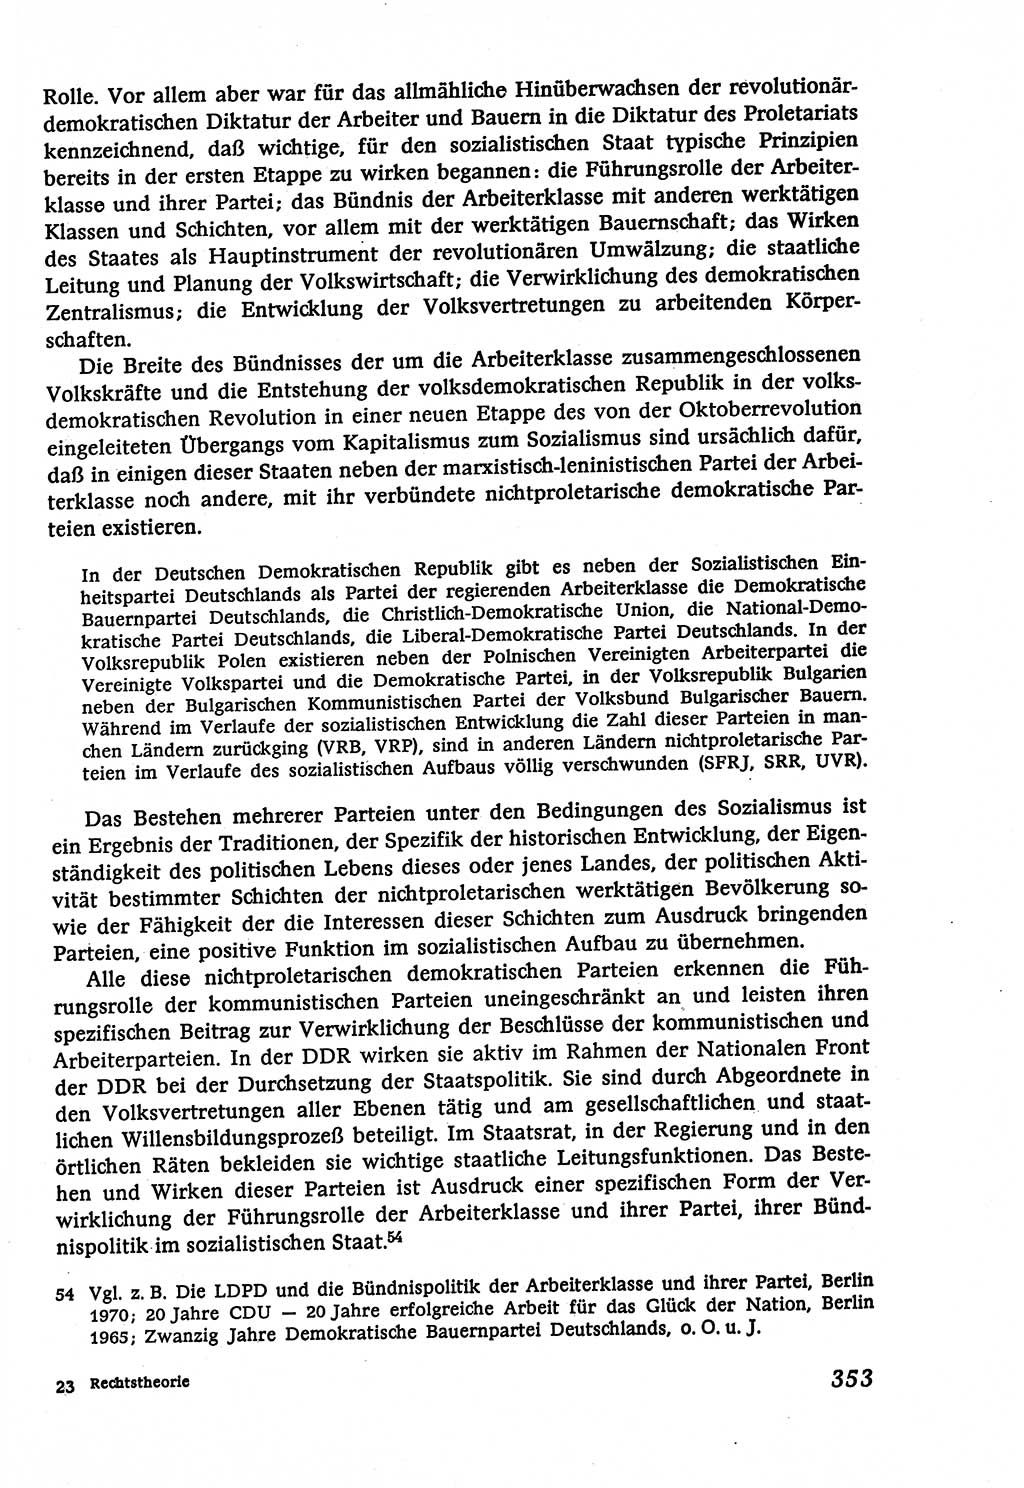 Marxistisch-leninistische (ML) Staats- und Rechtstheorie [Deutsche Demokratische Republik (DDR)], Lehrbuch 1980, Seite 353 (ML St.-R.-Th. DDR Lb. 1980, S. 353)